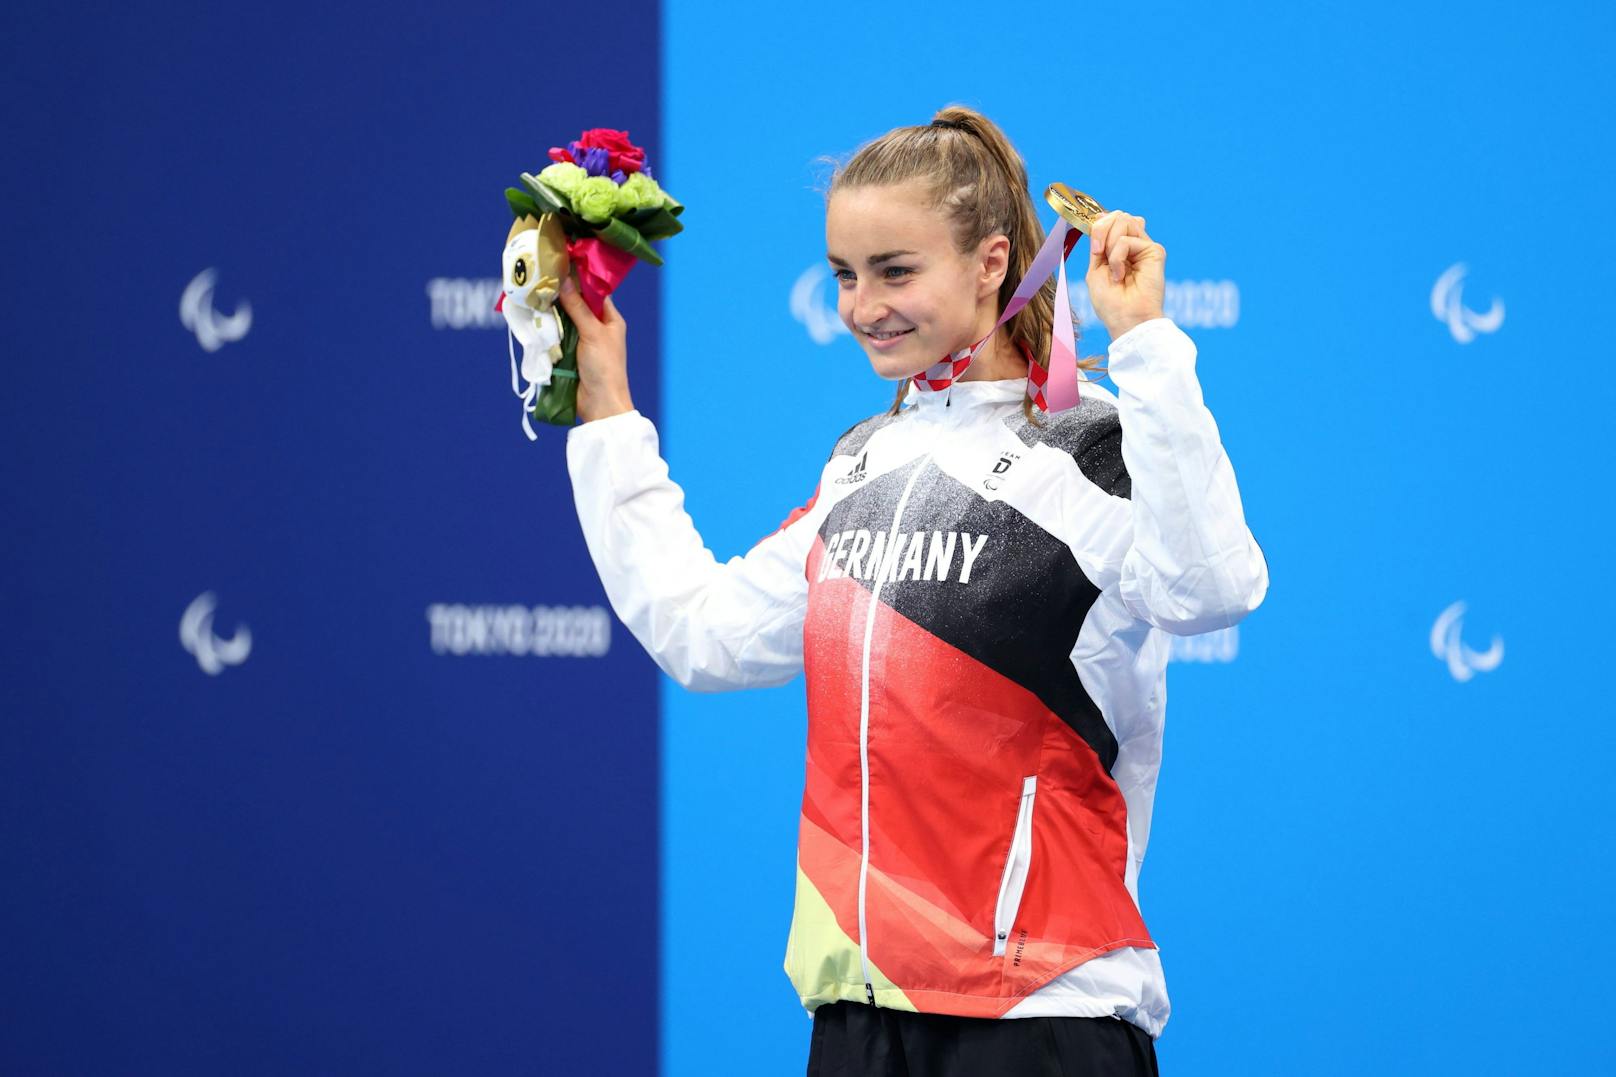 Elena Krawzow